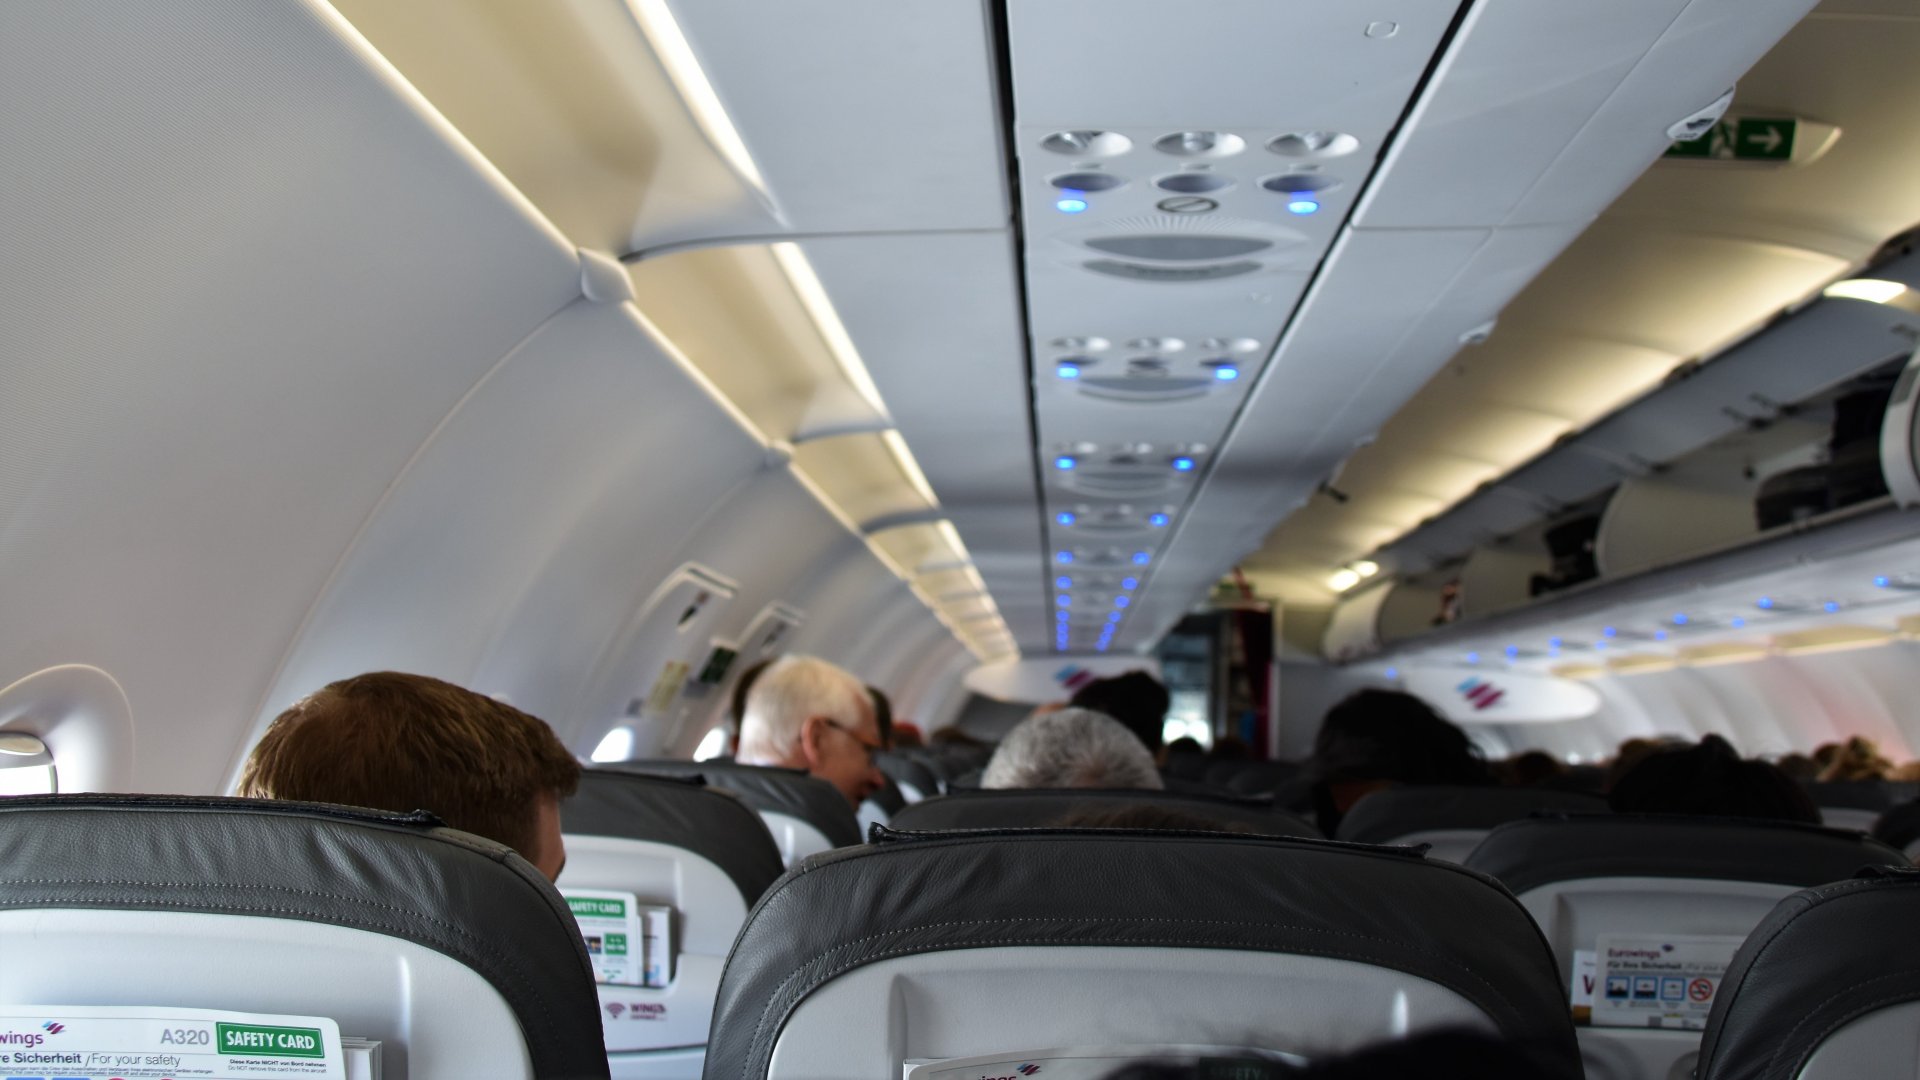 Utasok a repülőgépen